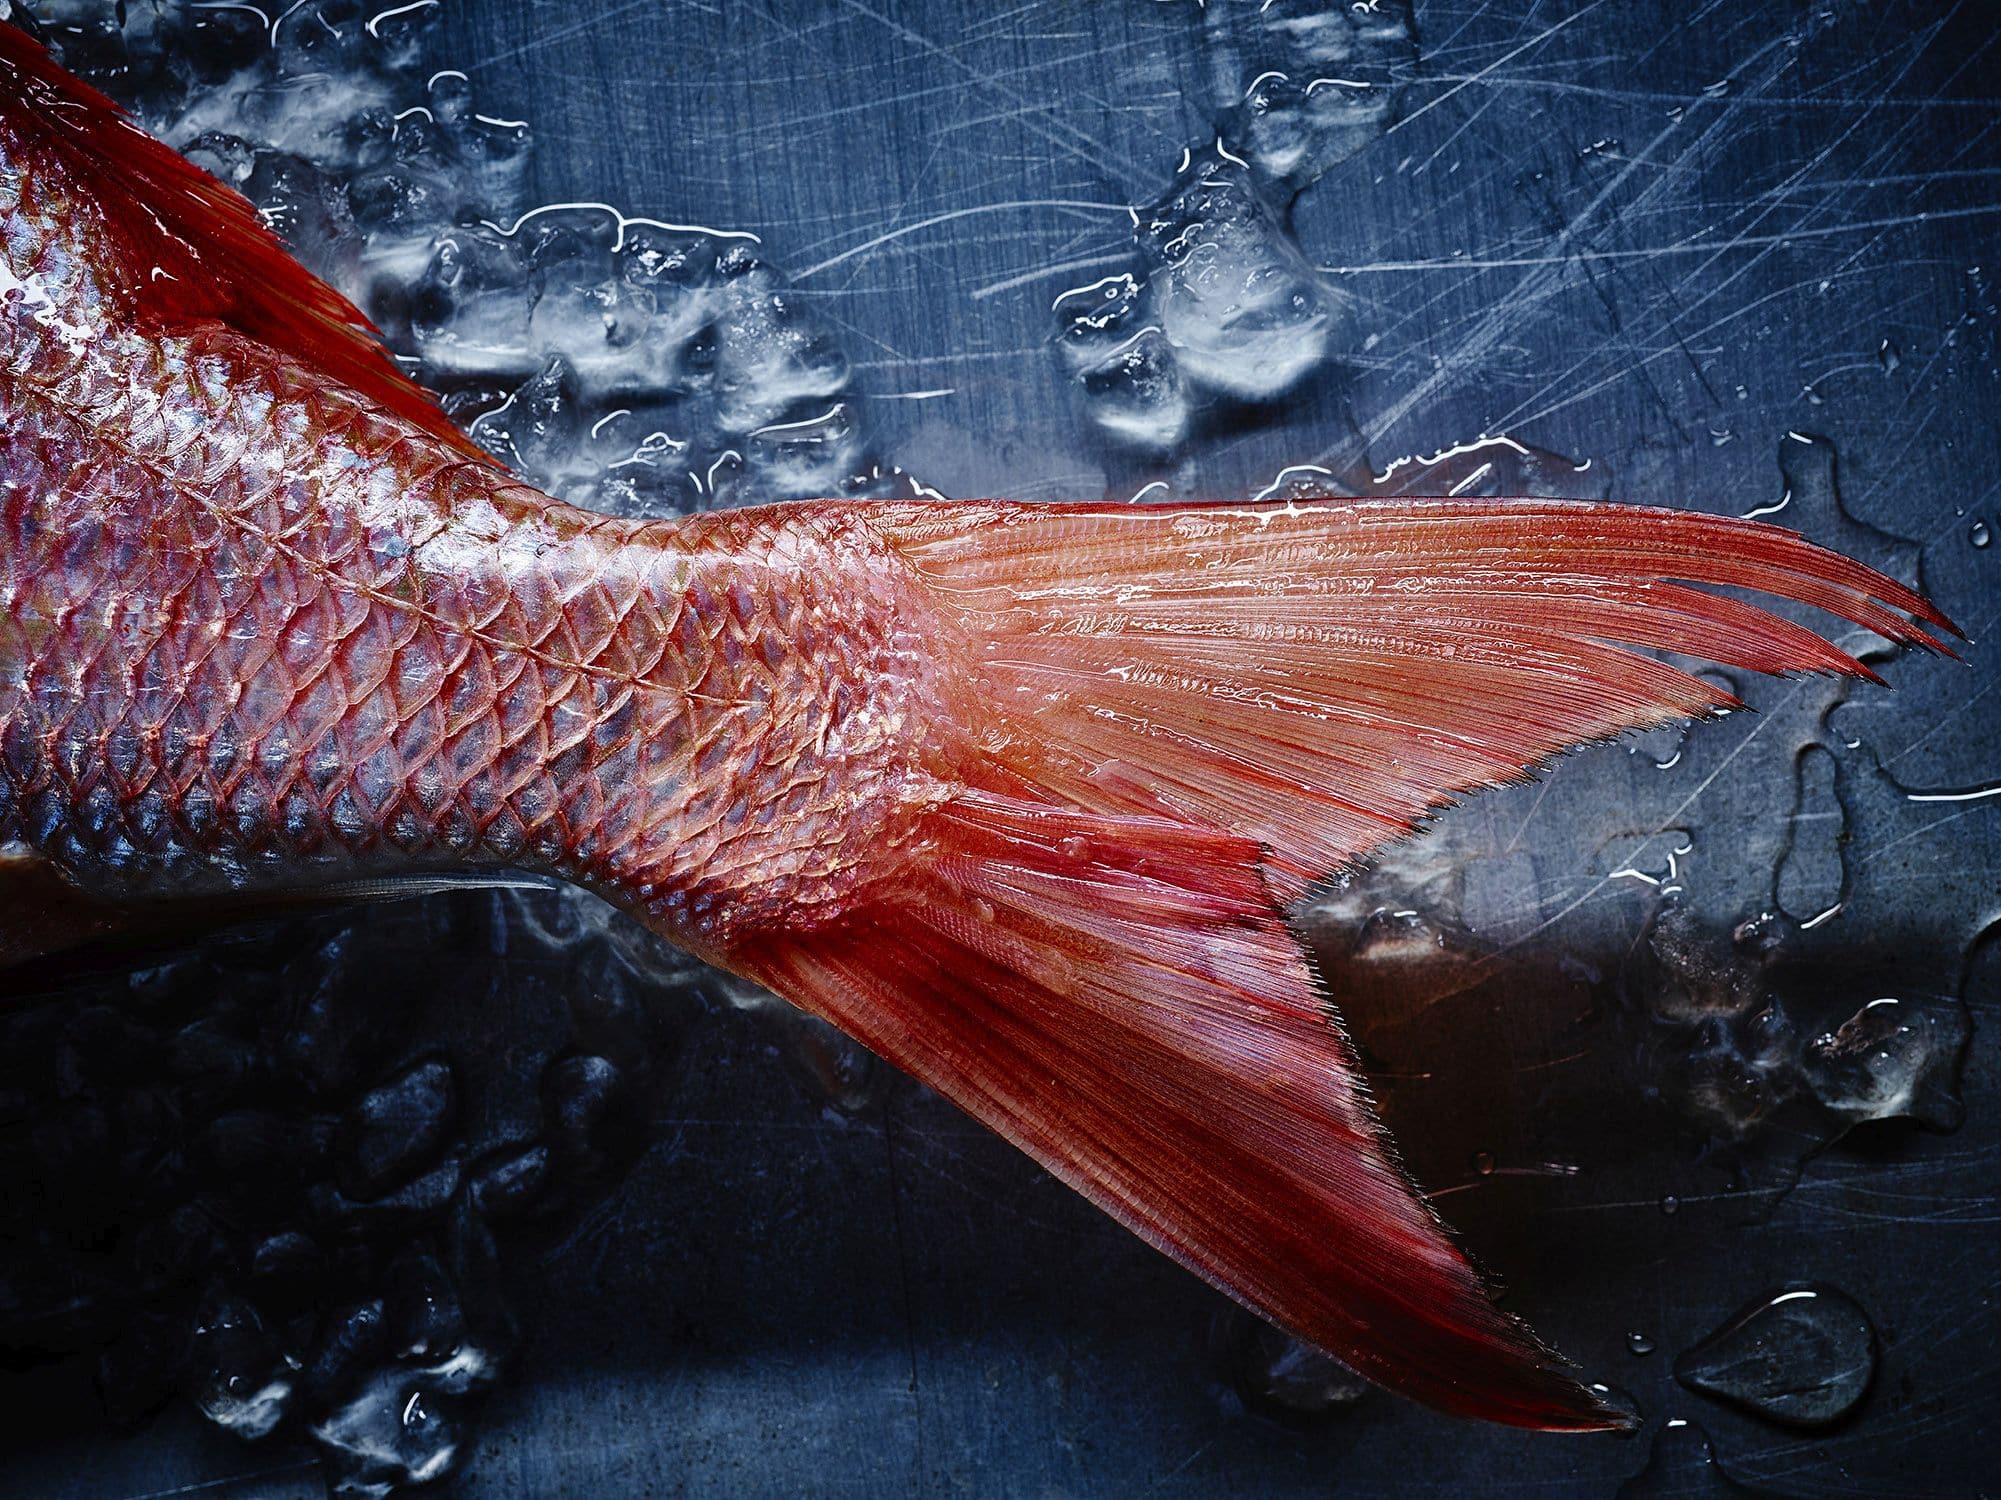 הדג שדן פרץ צילם למסעדת משייה – התמחות בתחום האוכל